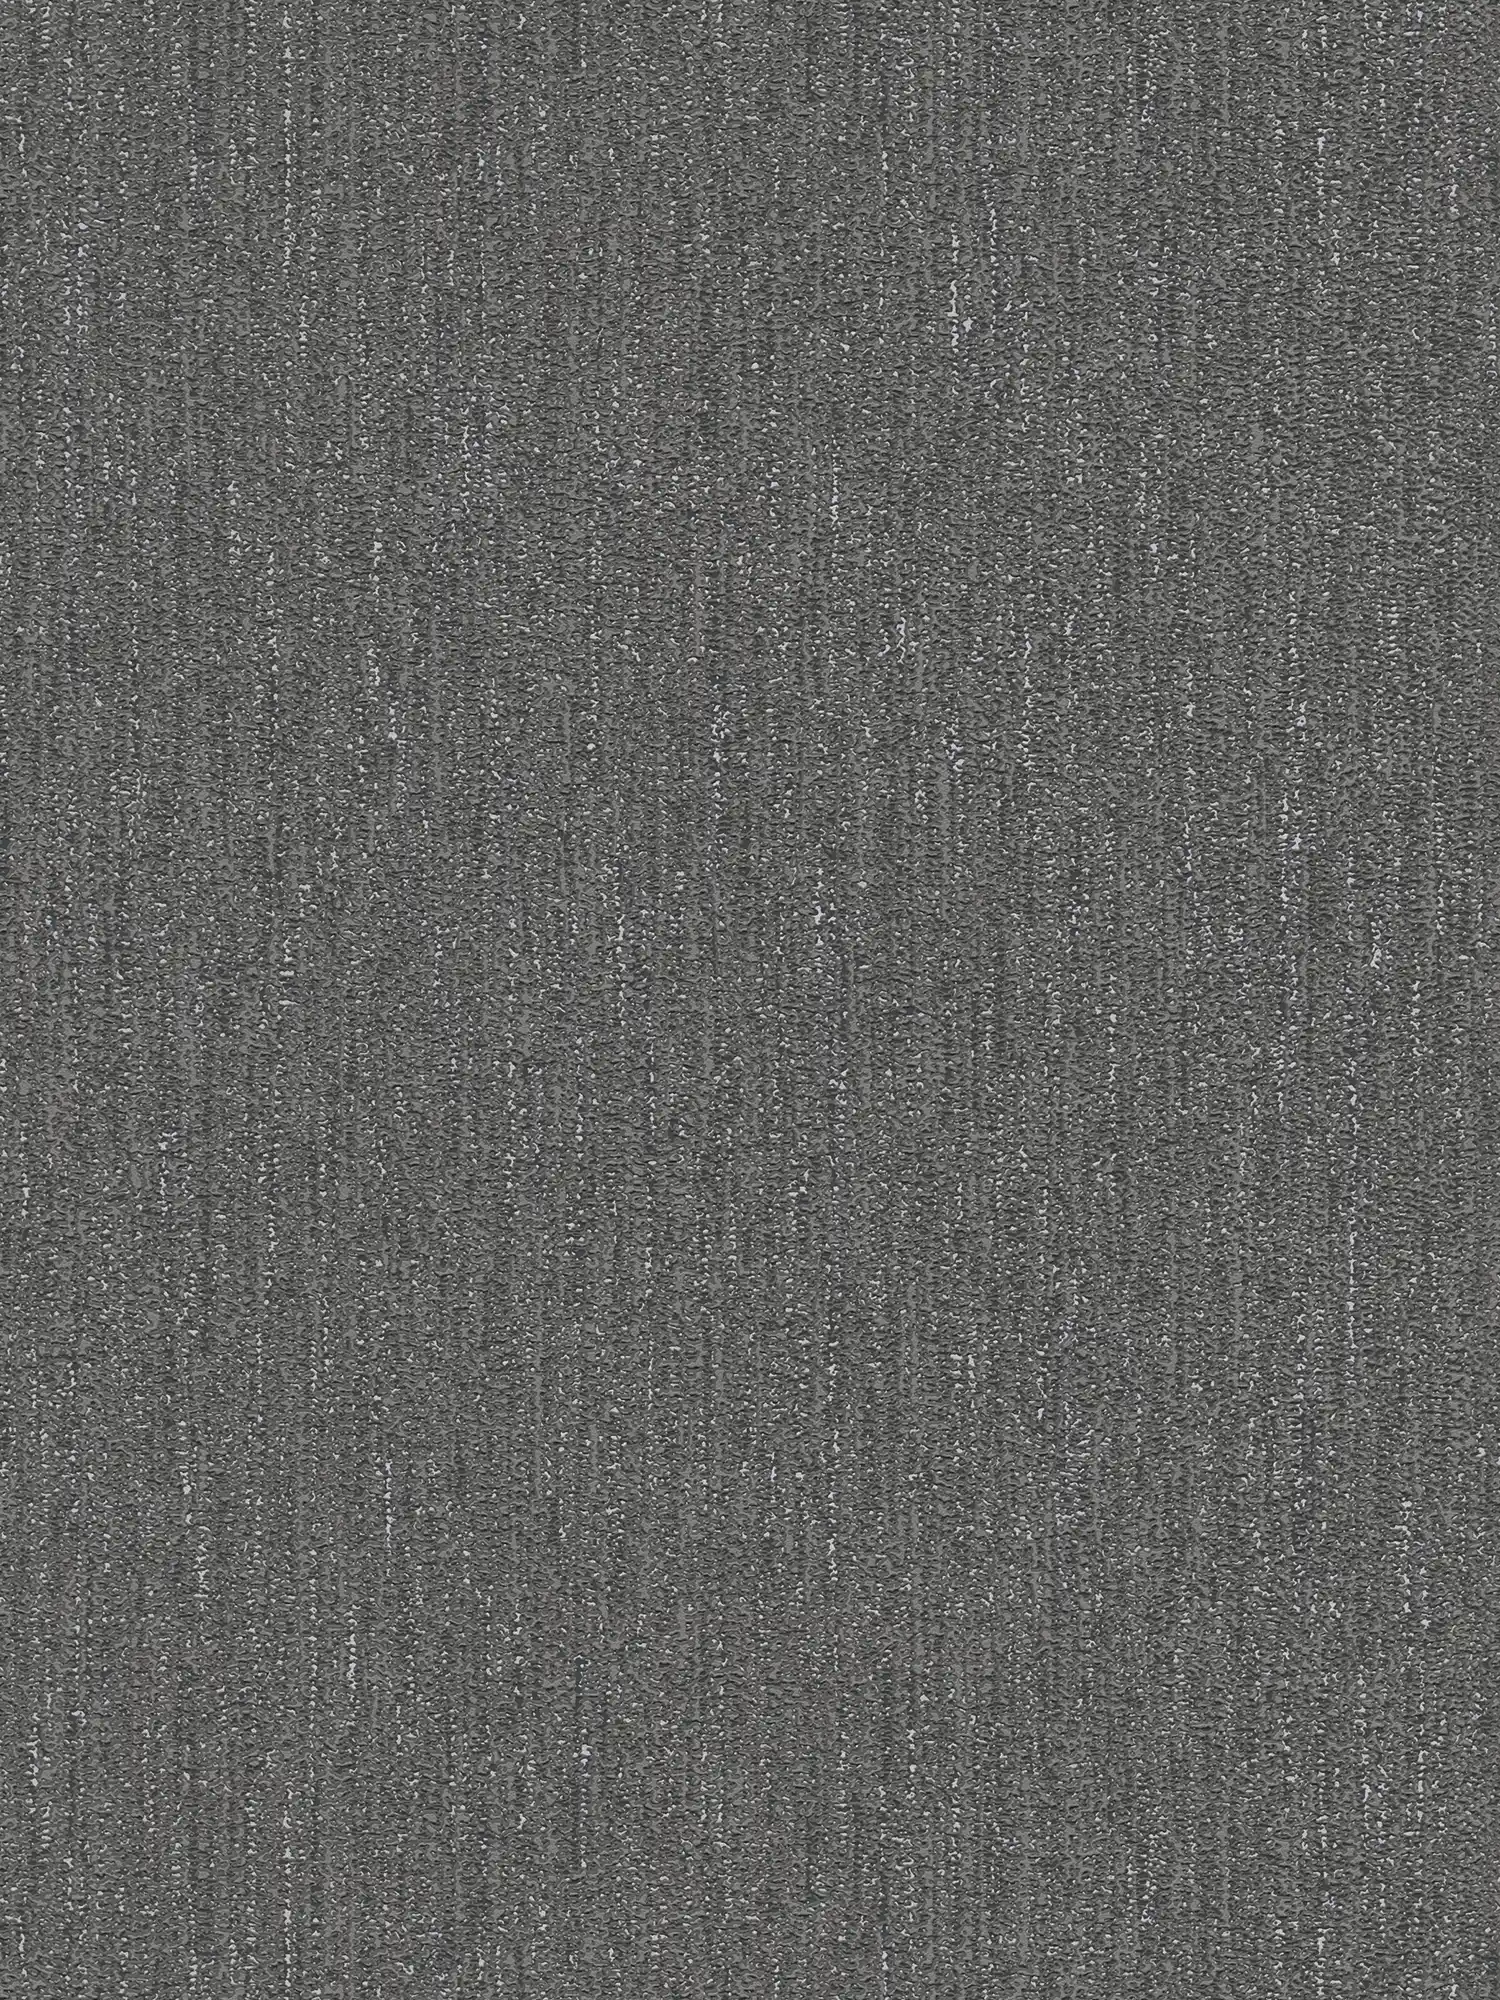 Papier peint légèrement brillant avec structure tissée - noir, gris, argenté
